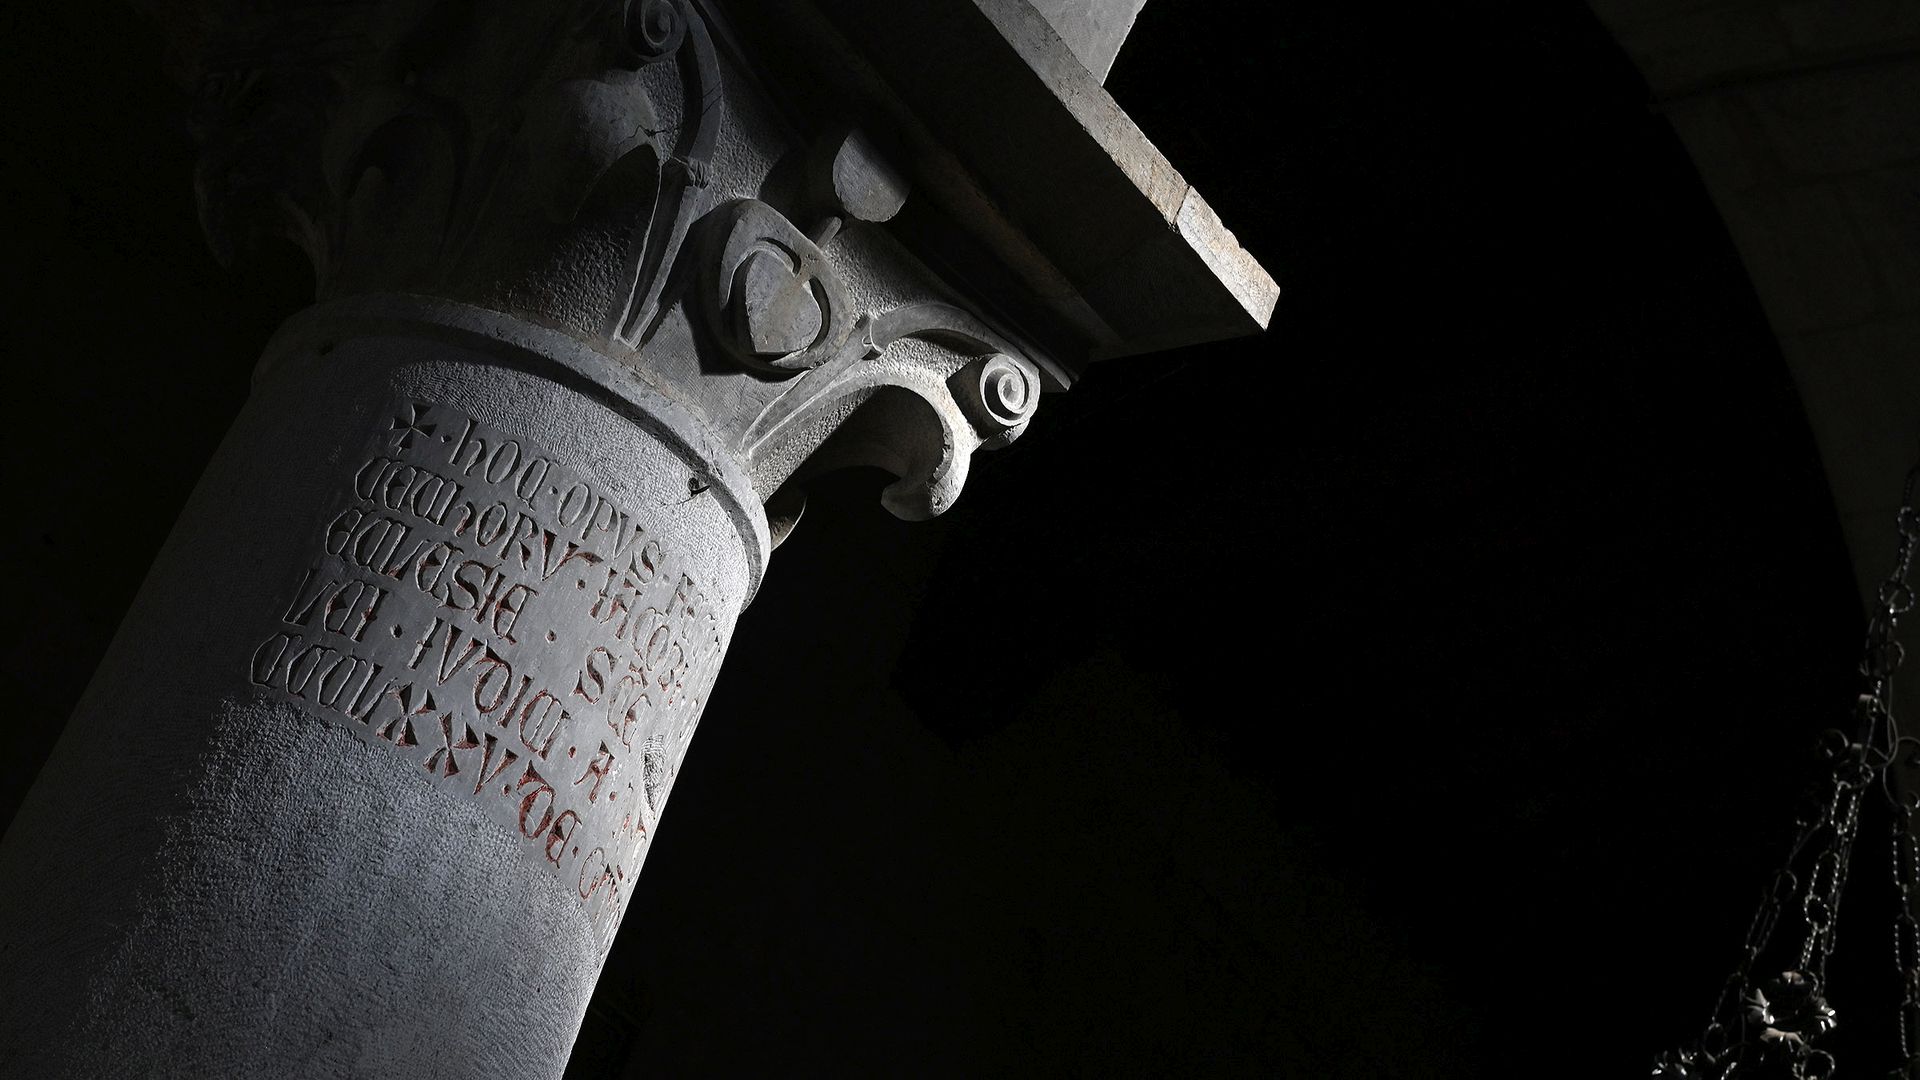 inscription on a capital in the parish church of santa maria del giudice in lucca